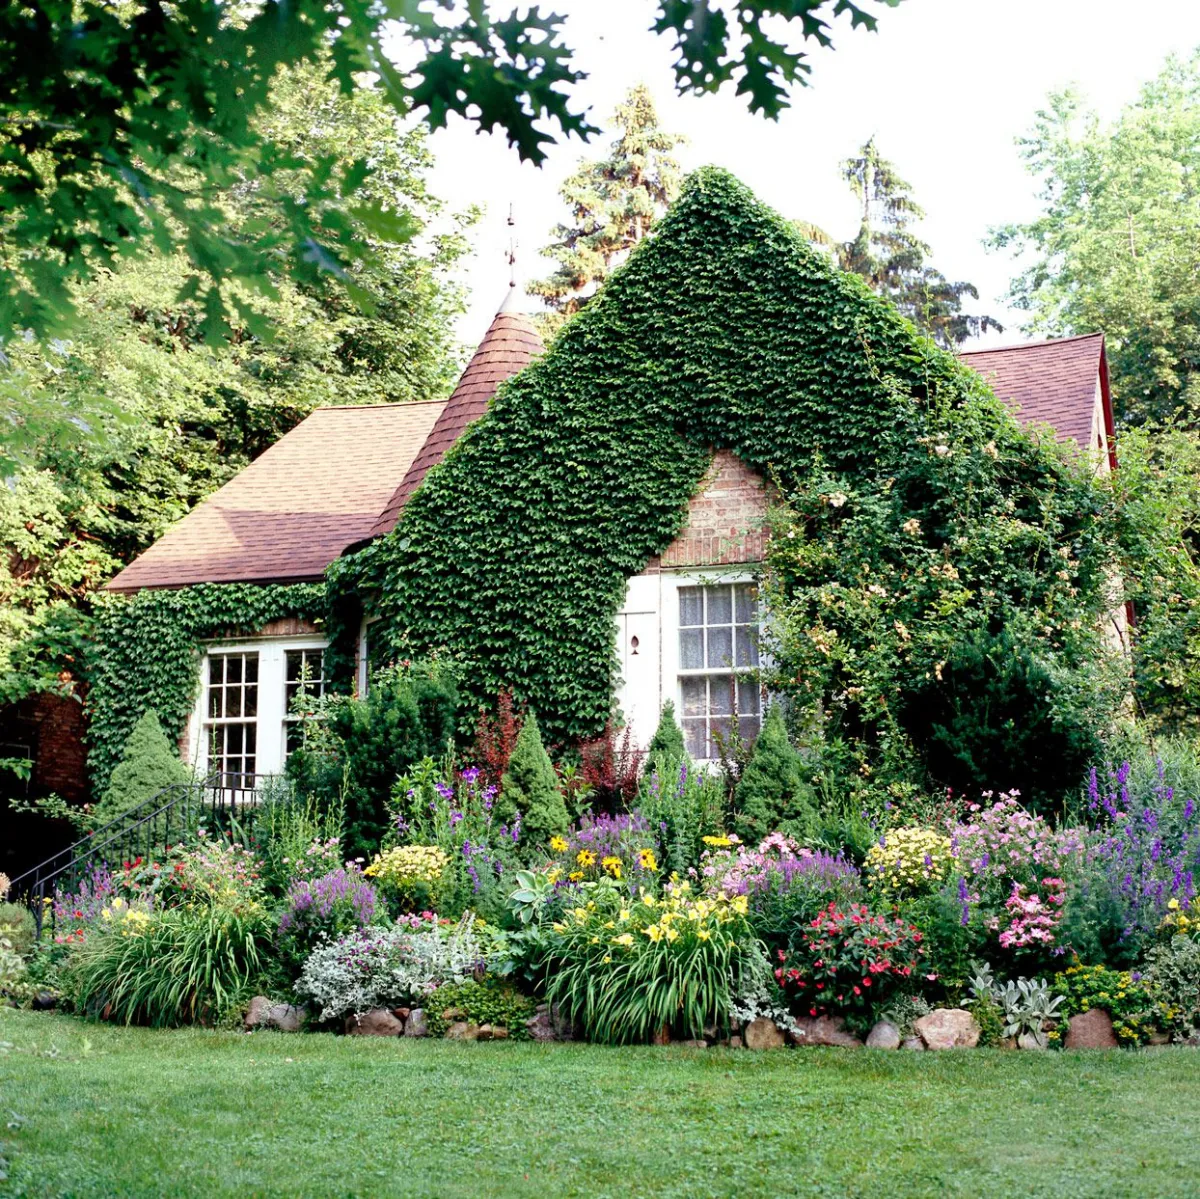 maison avec de lierre sur les murs pelouse verte fleurs